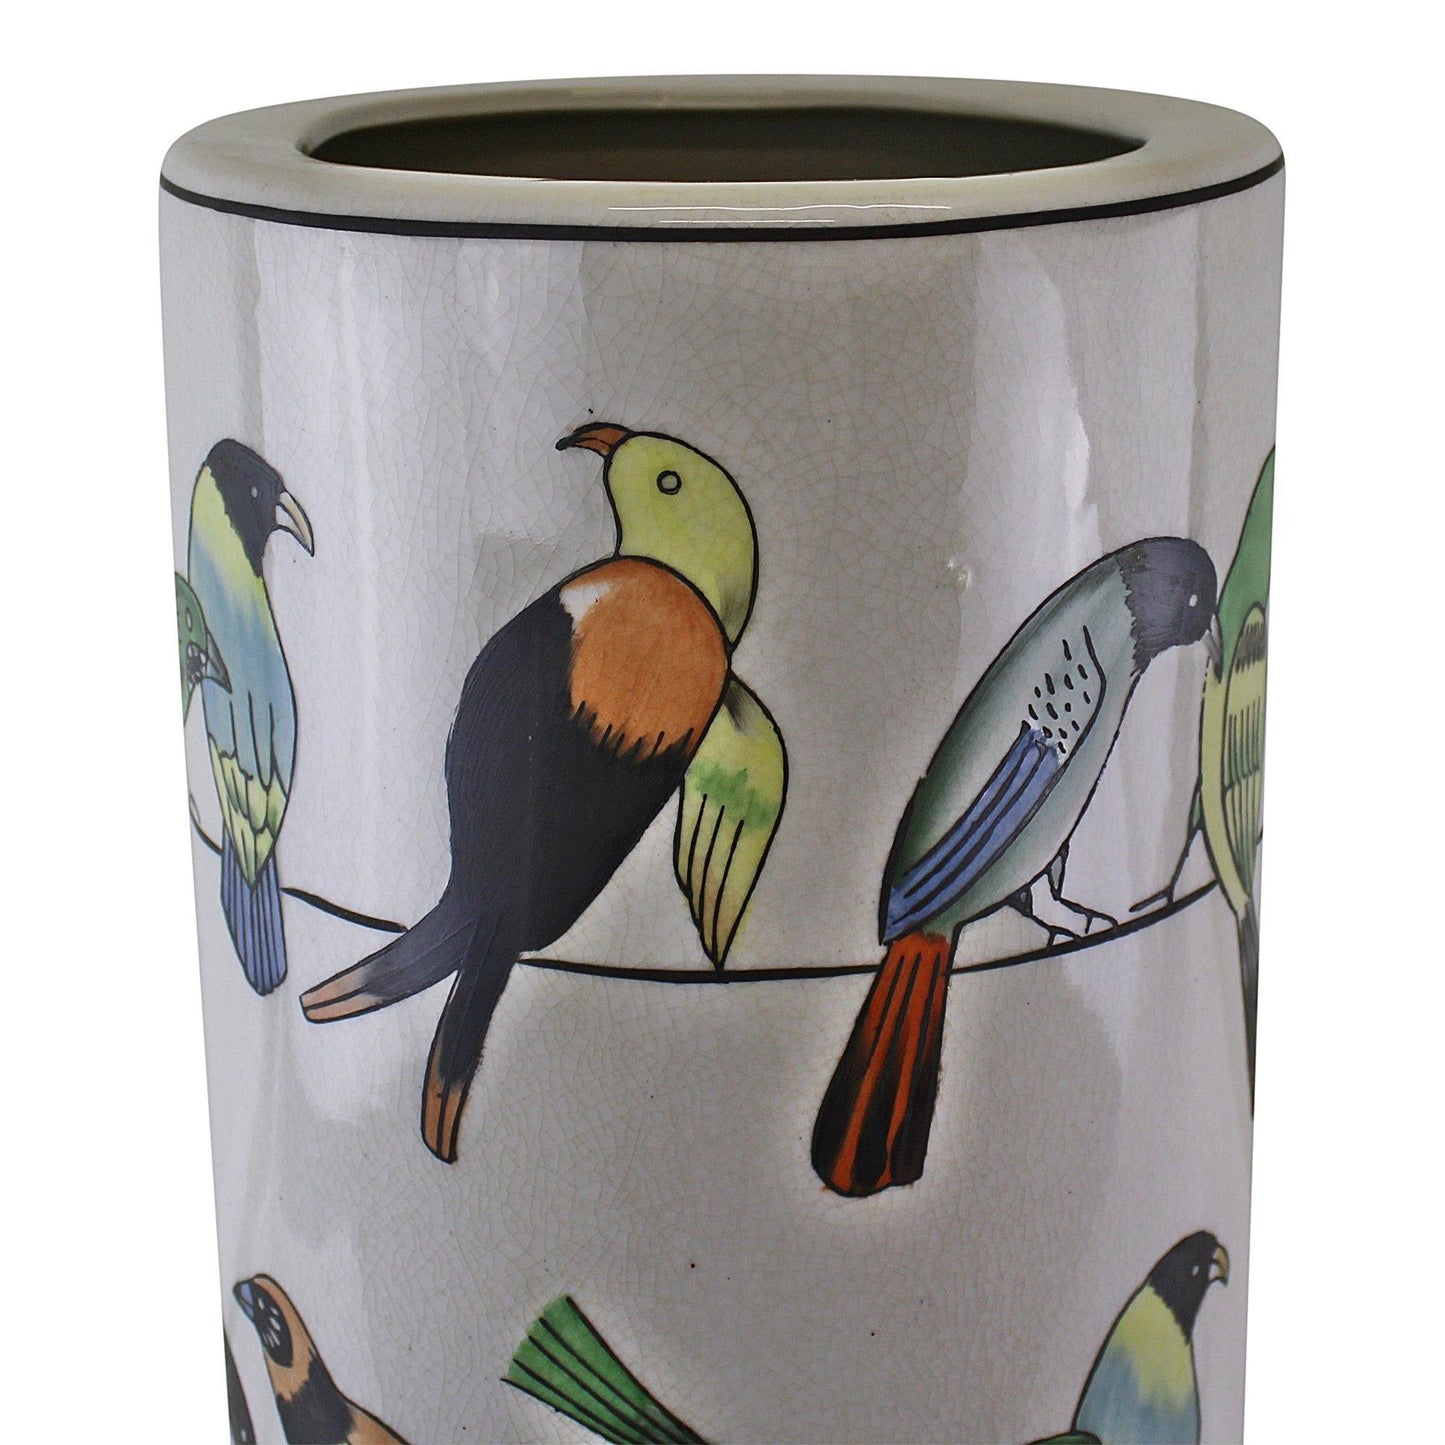 Ceramic Umbrella Stand, Multi Birds Design - Kporium Home & Garden